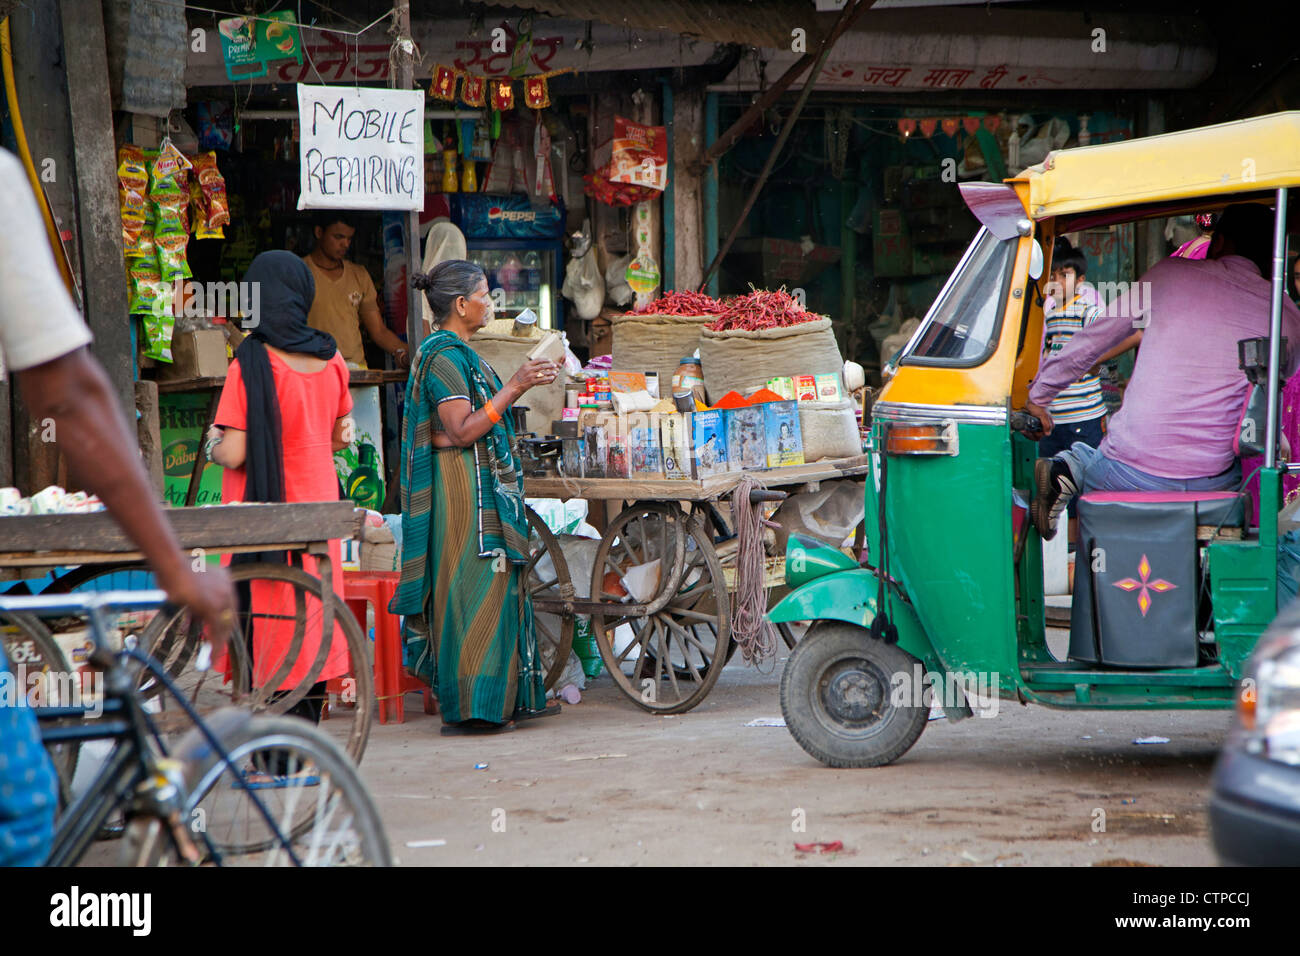 Atelier de réparation mobile et trois roues taxi / bajaj dans rue animée de Delhi, Inde Banque D'Images